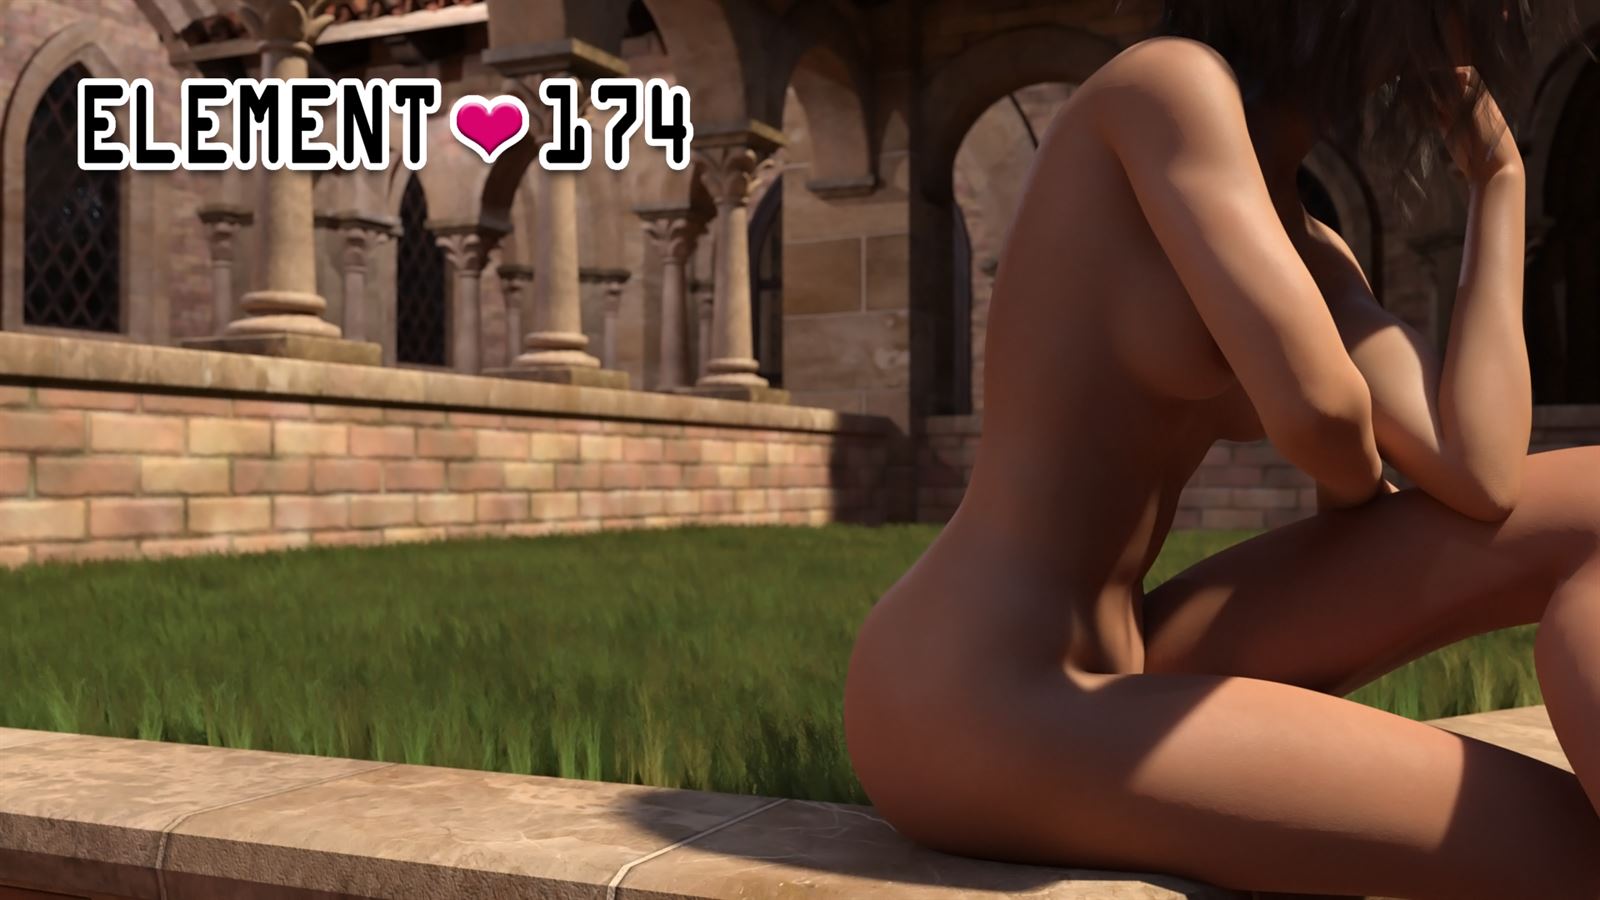 Element Sex - Element-174 Ren'py Porn Sex Game v.0.22 Download for Windows, MacOS, Linux